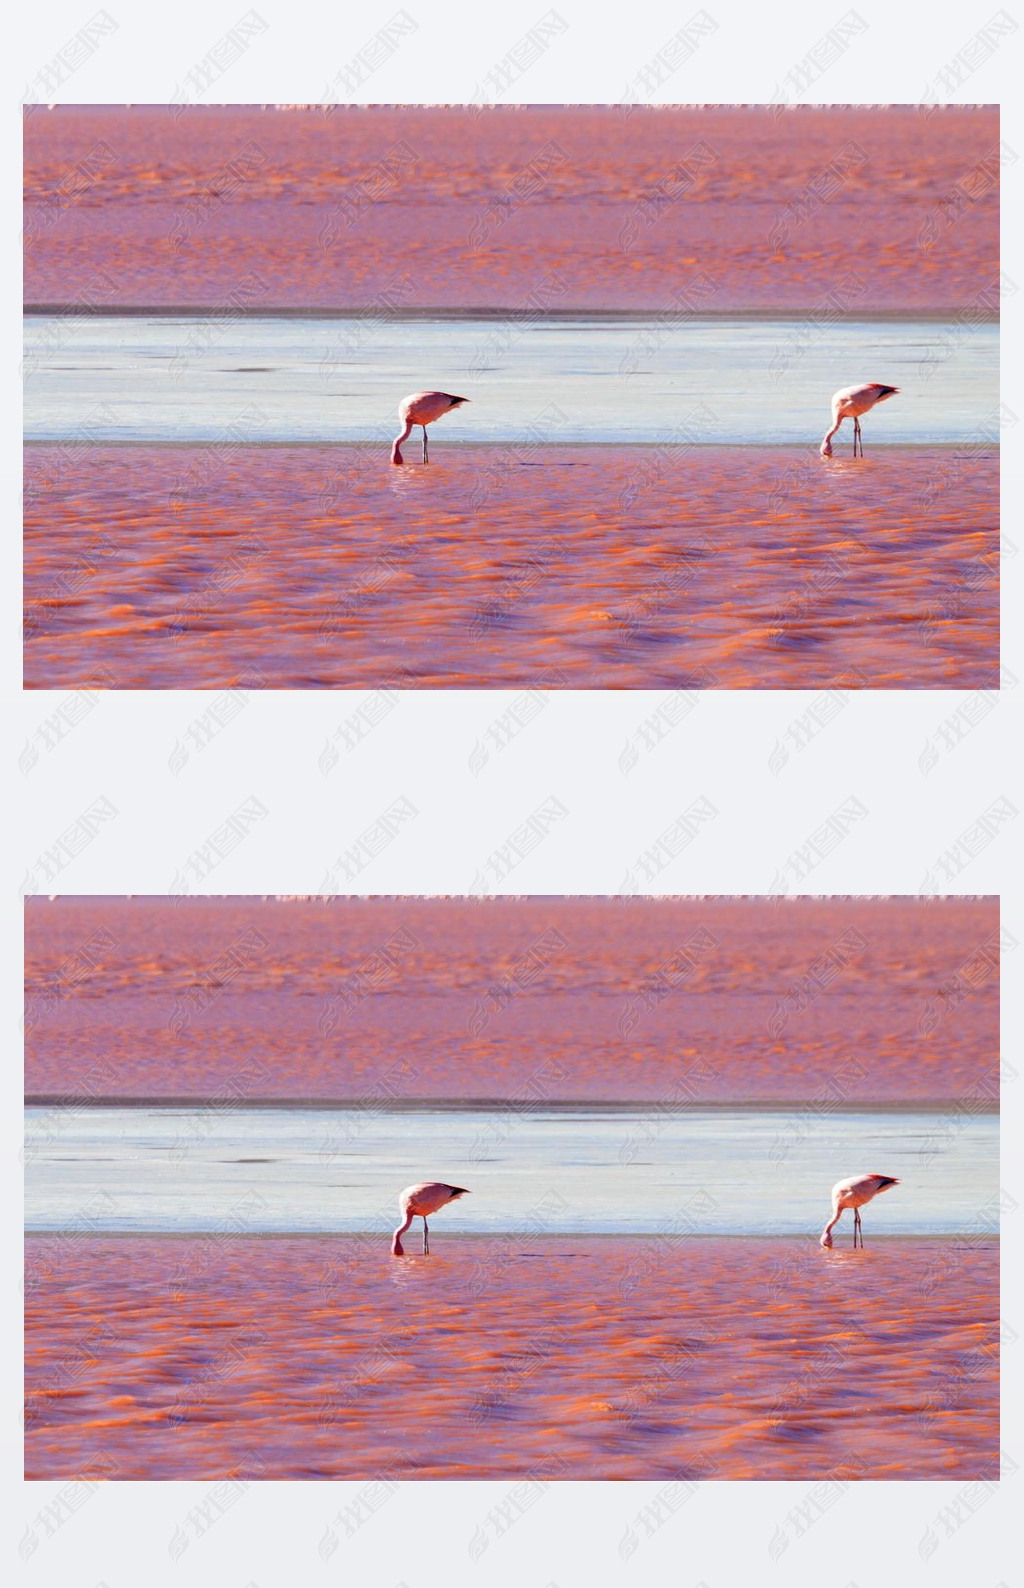 άLaguna Colada flamingos